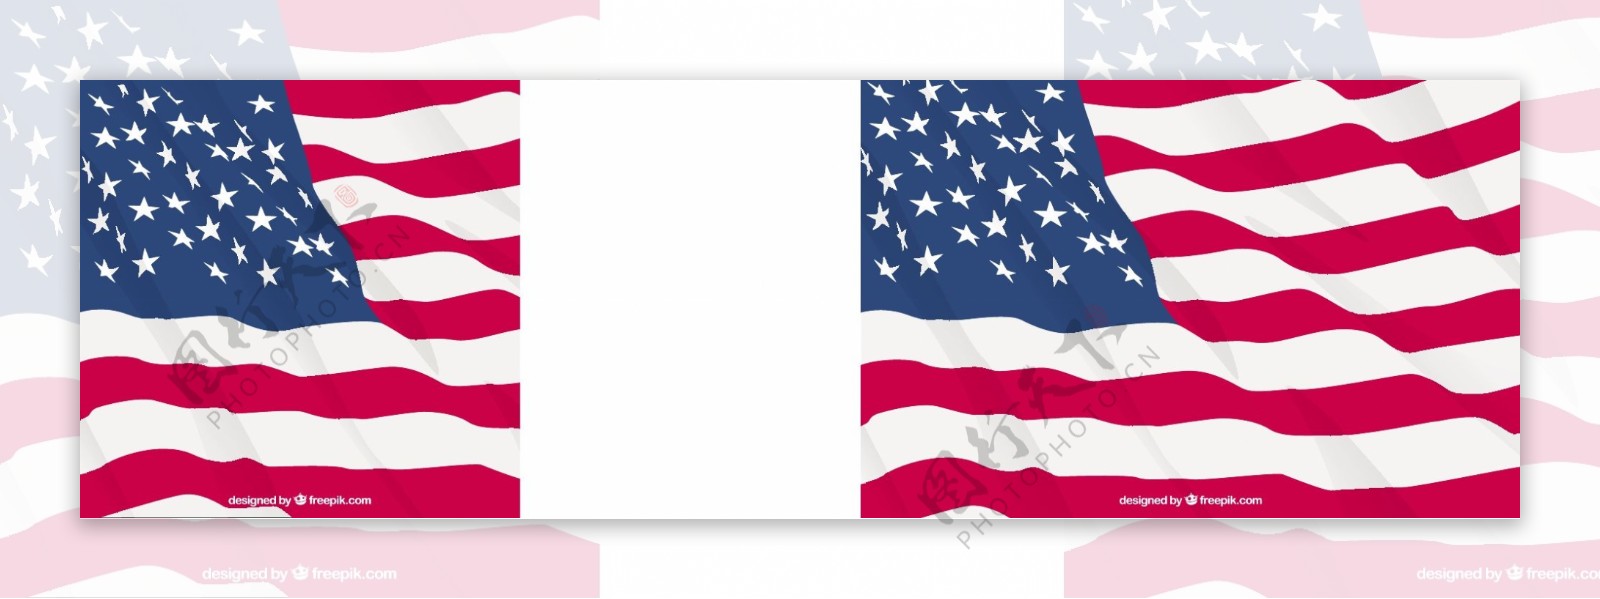 美国国旗在现实设计中的背景